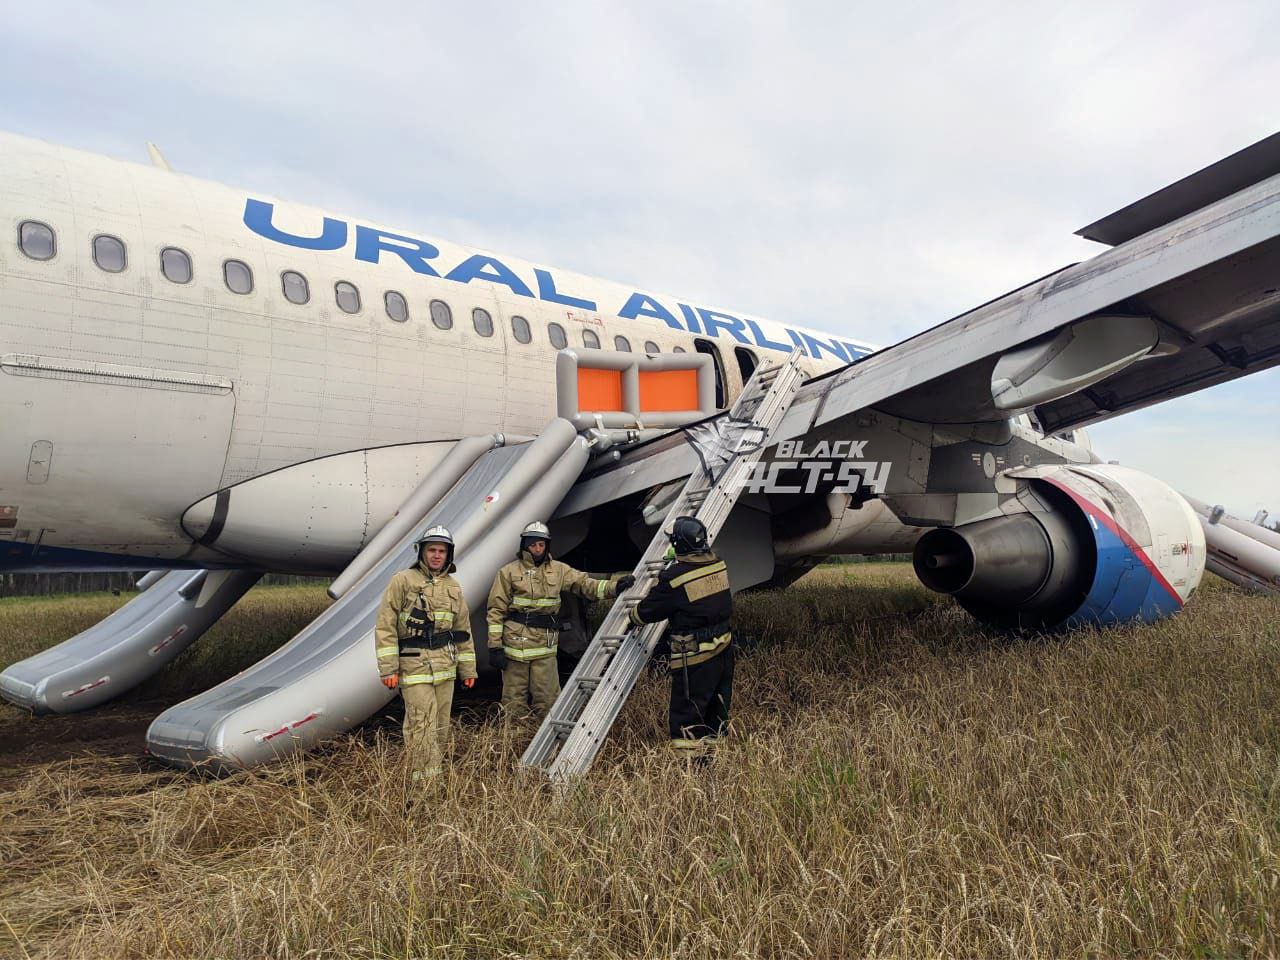 Как проходила эвакуация пассажиров из аварийно севшего самолета